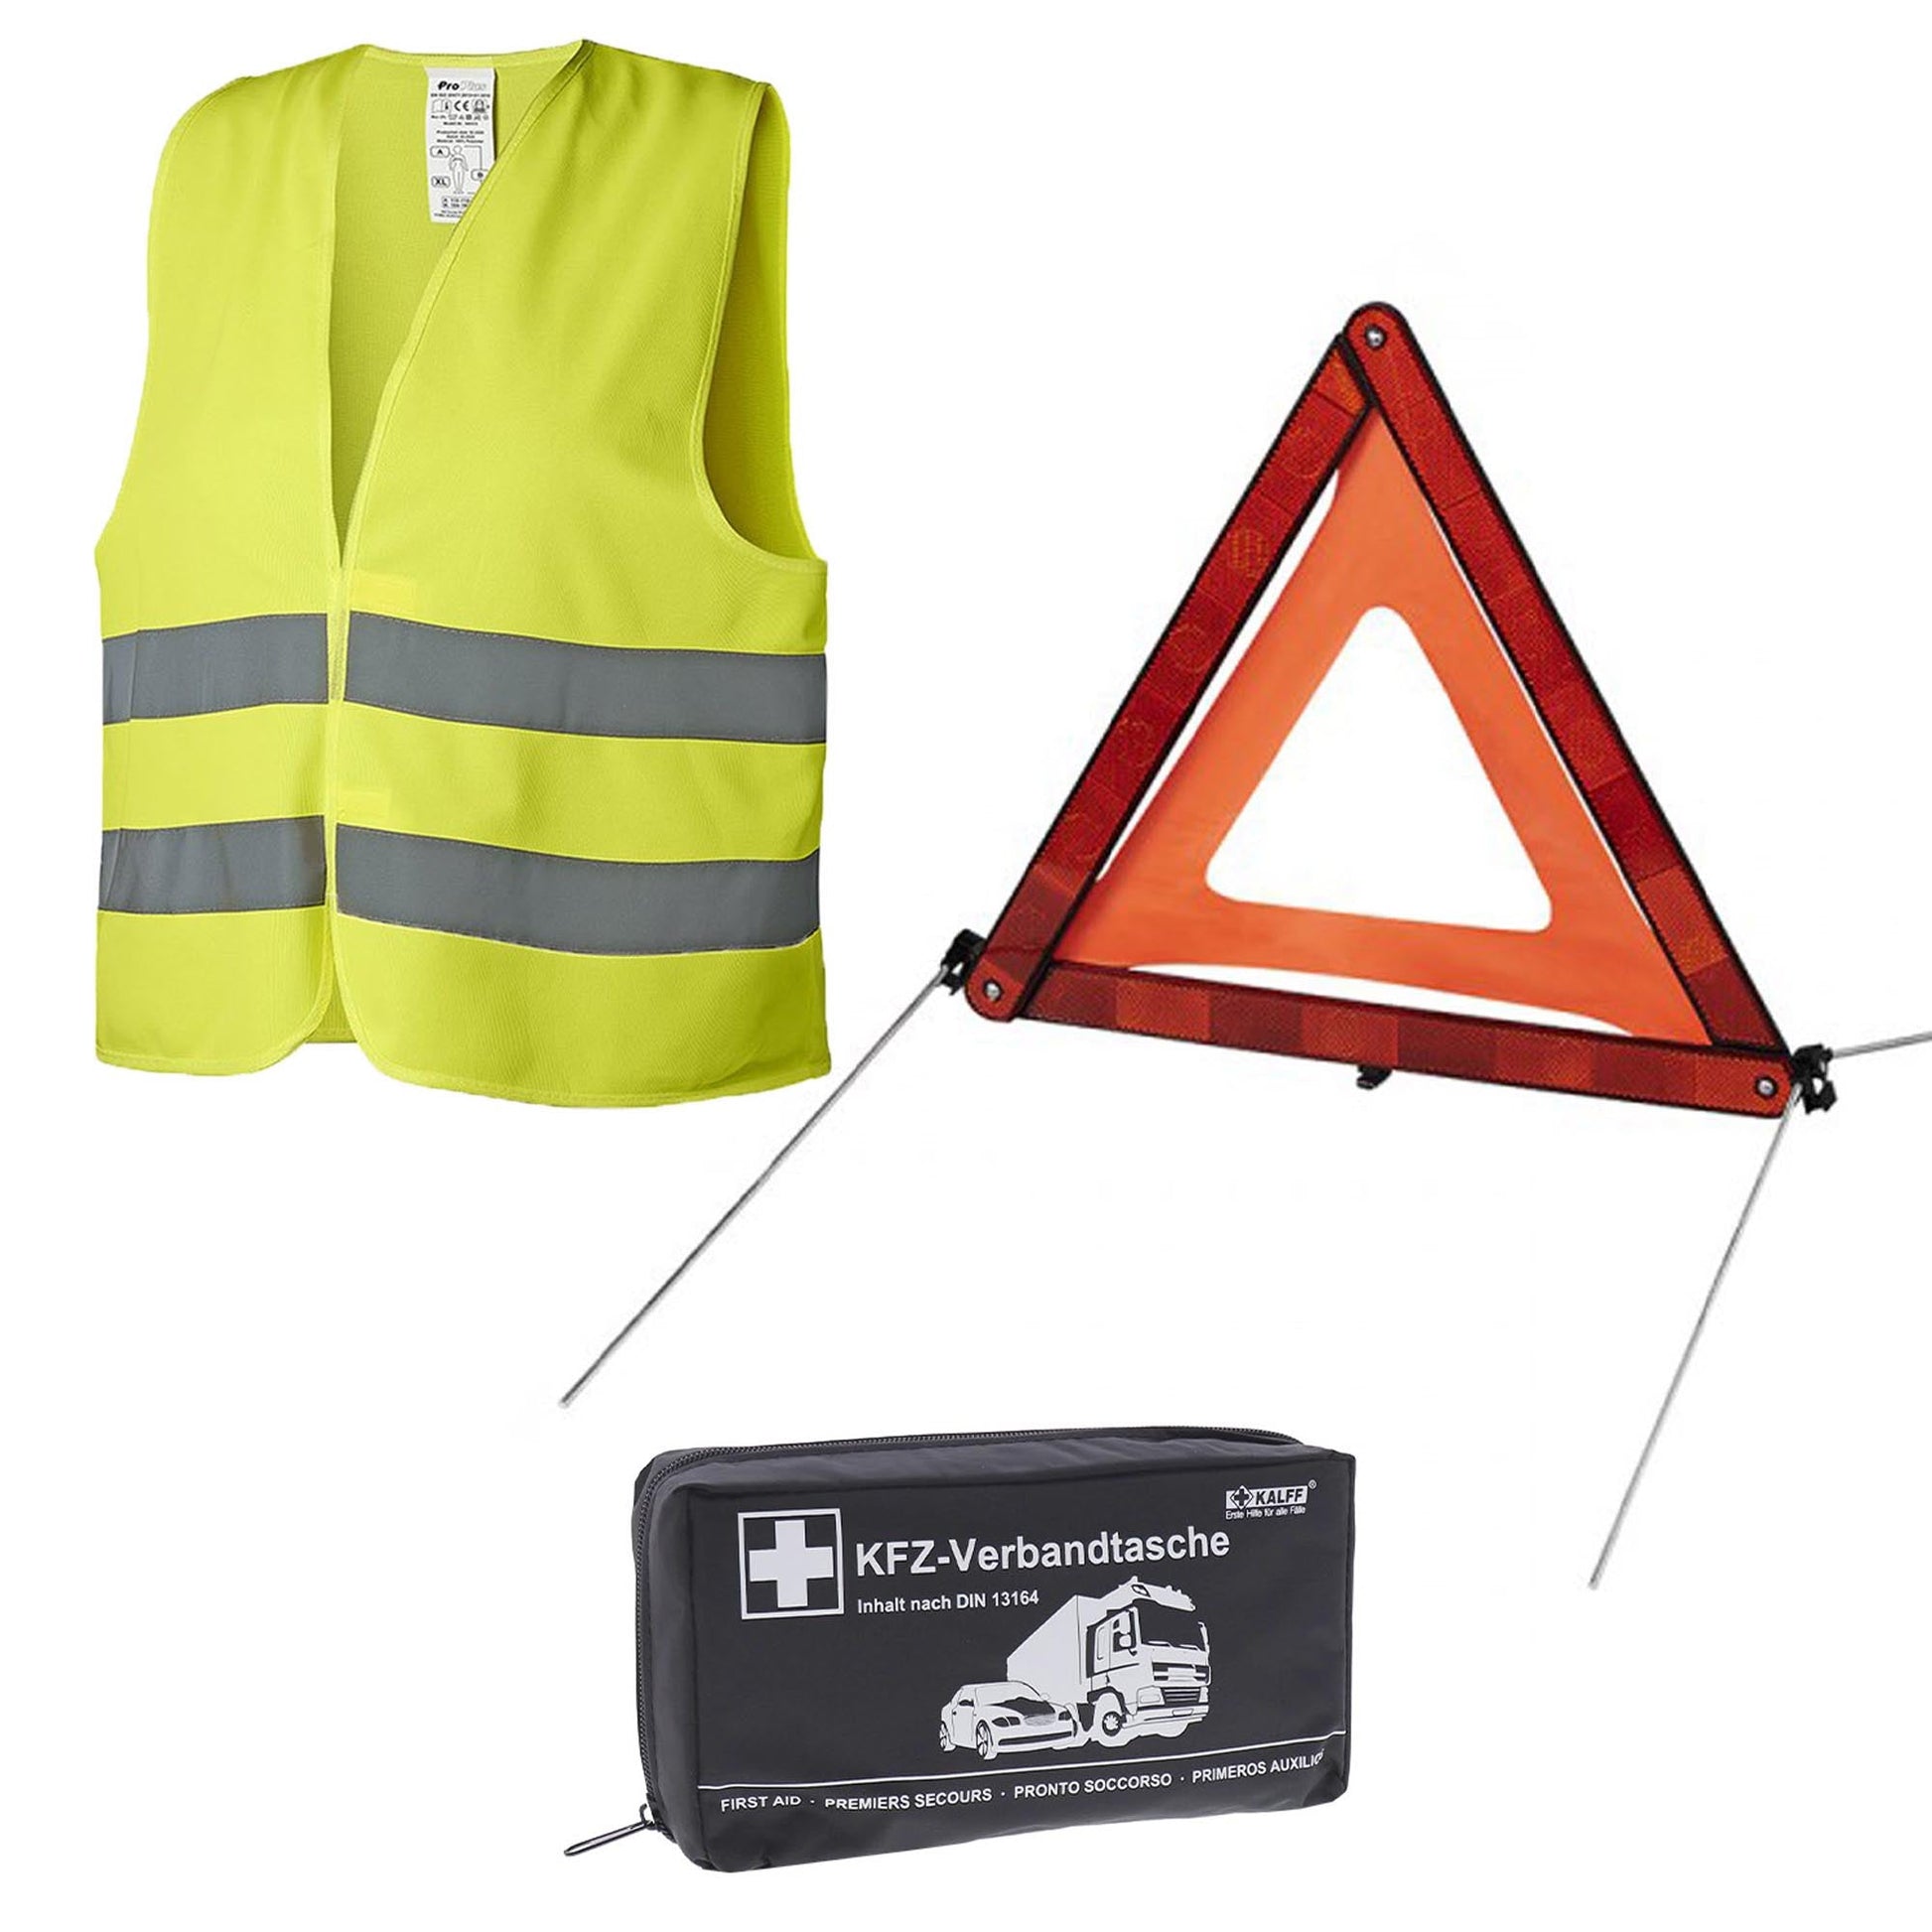 KFZ-Verbandtasche | Erste-Hilfe-Tasche | DIN 13164 | Mit Warnweste